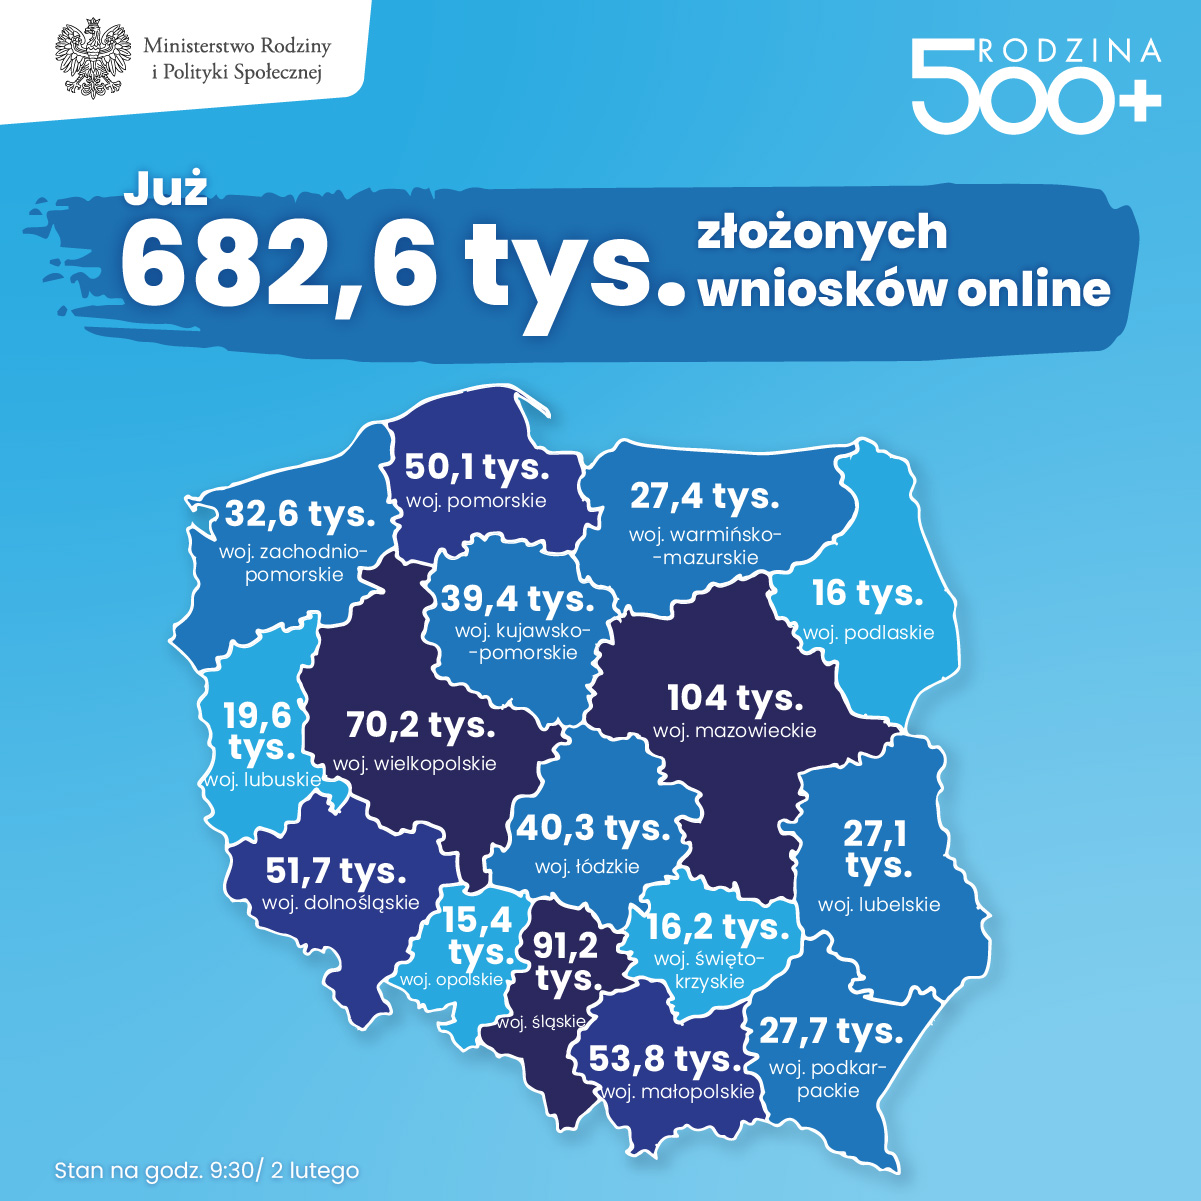 Liczba złożonych wniosków w województwach - stan 2.02.2021